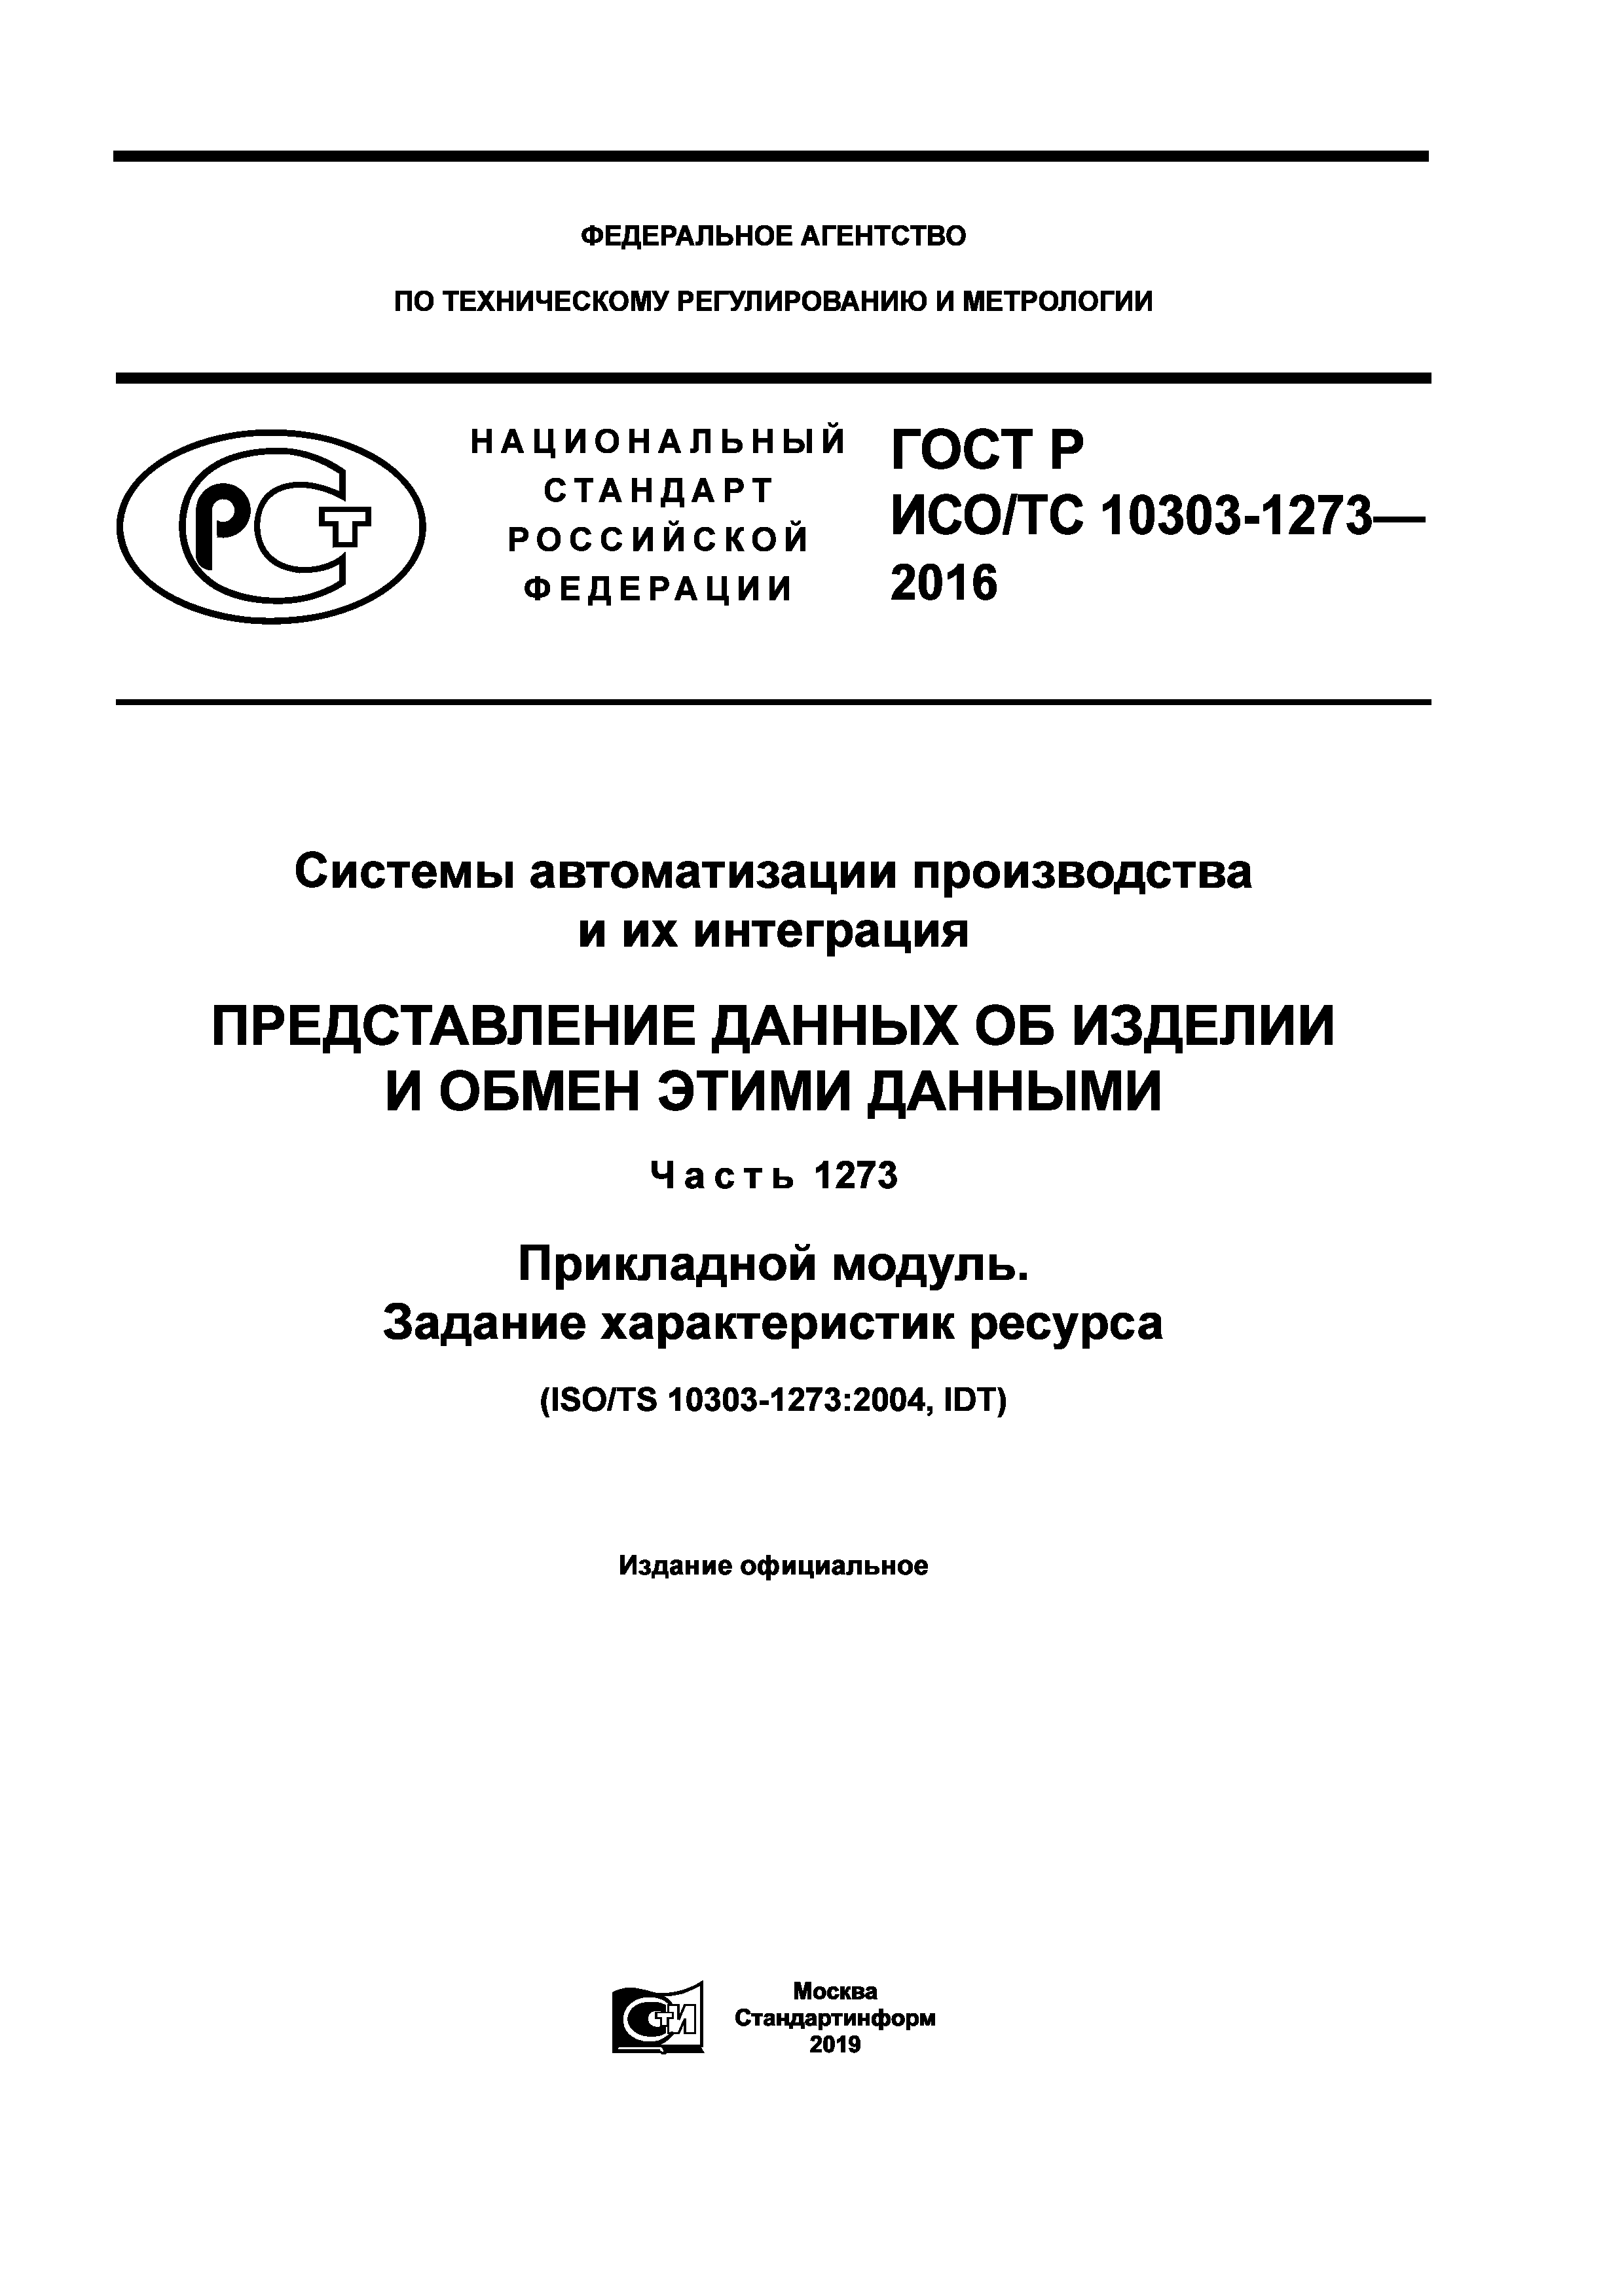 ГОСТ Р ИСО/ТС 10303-1273-2016